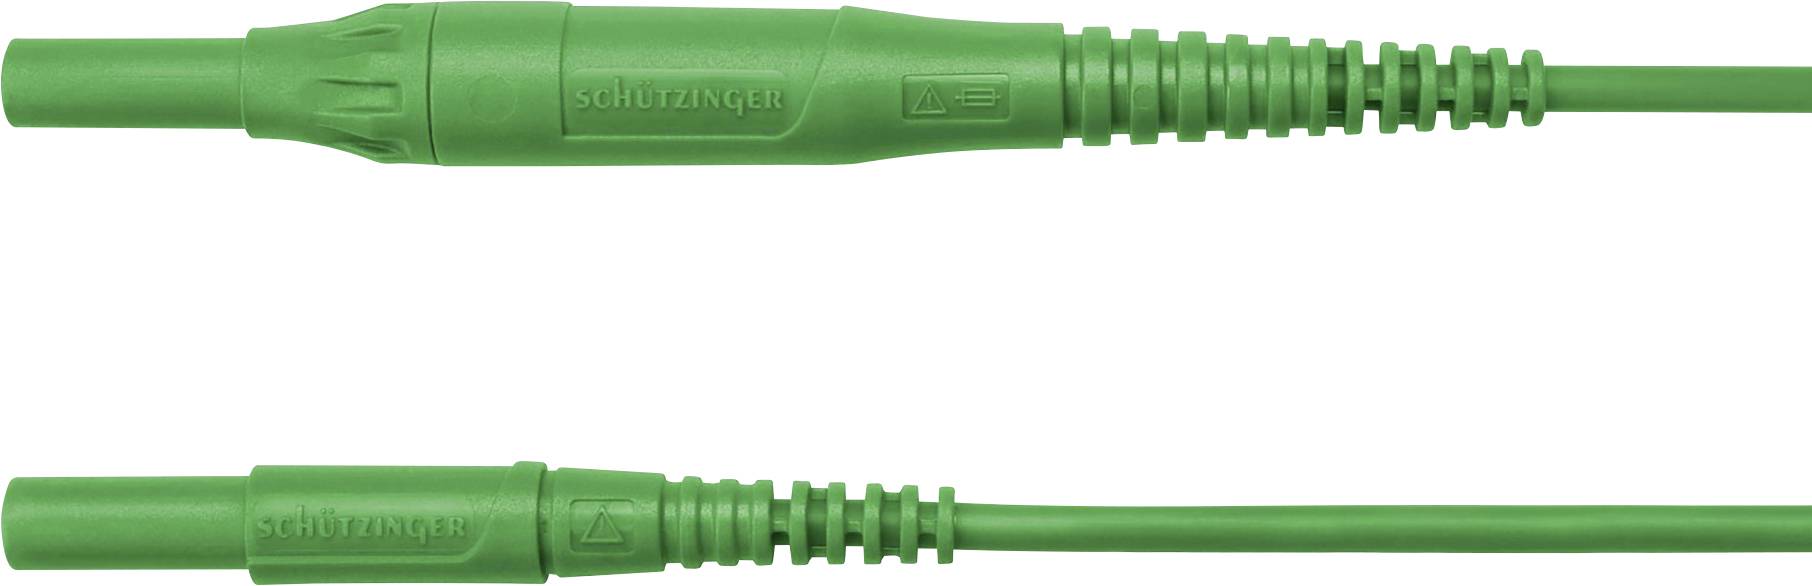 SCHÜTZINGER MSFK B441 / 1 / 100 / GN Messleitung [Stecker 4 mm - Stecker 4 mm] 100.00 cm Grün 5